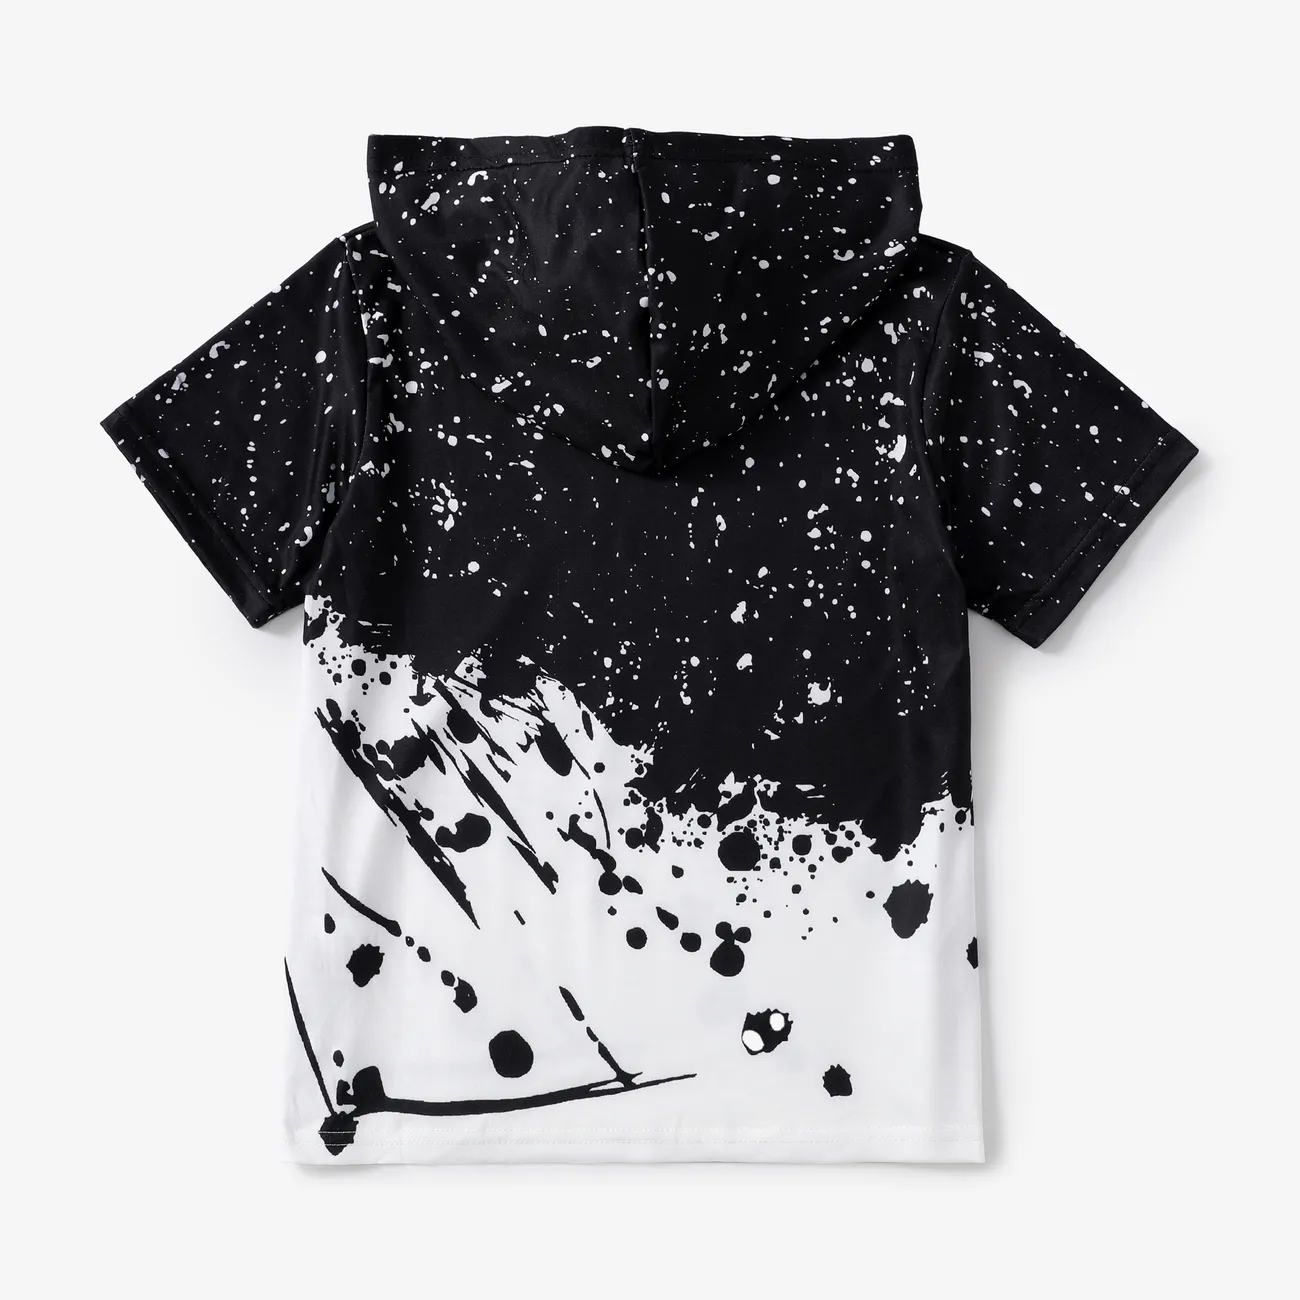 Enfants Garçon À capuche Imprimé spatial Manches courtes T-Shirt Noir big image 1